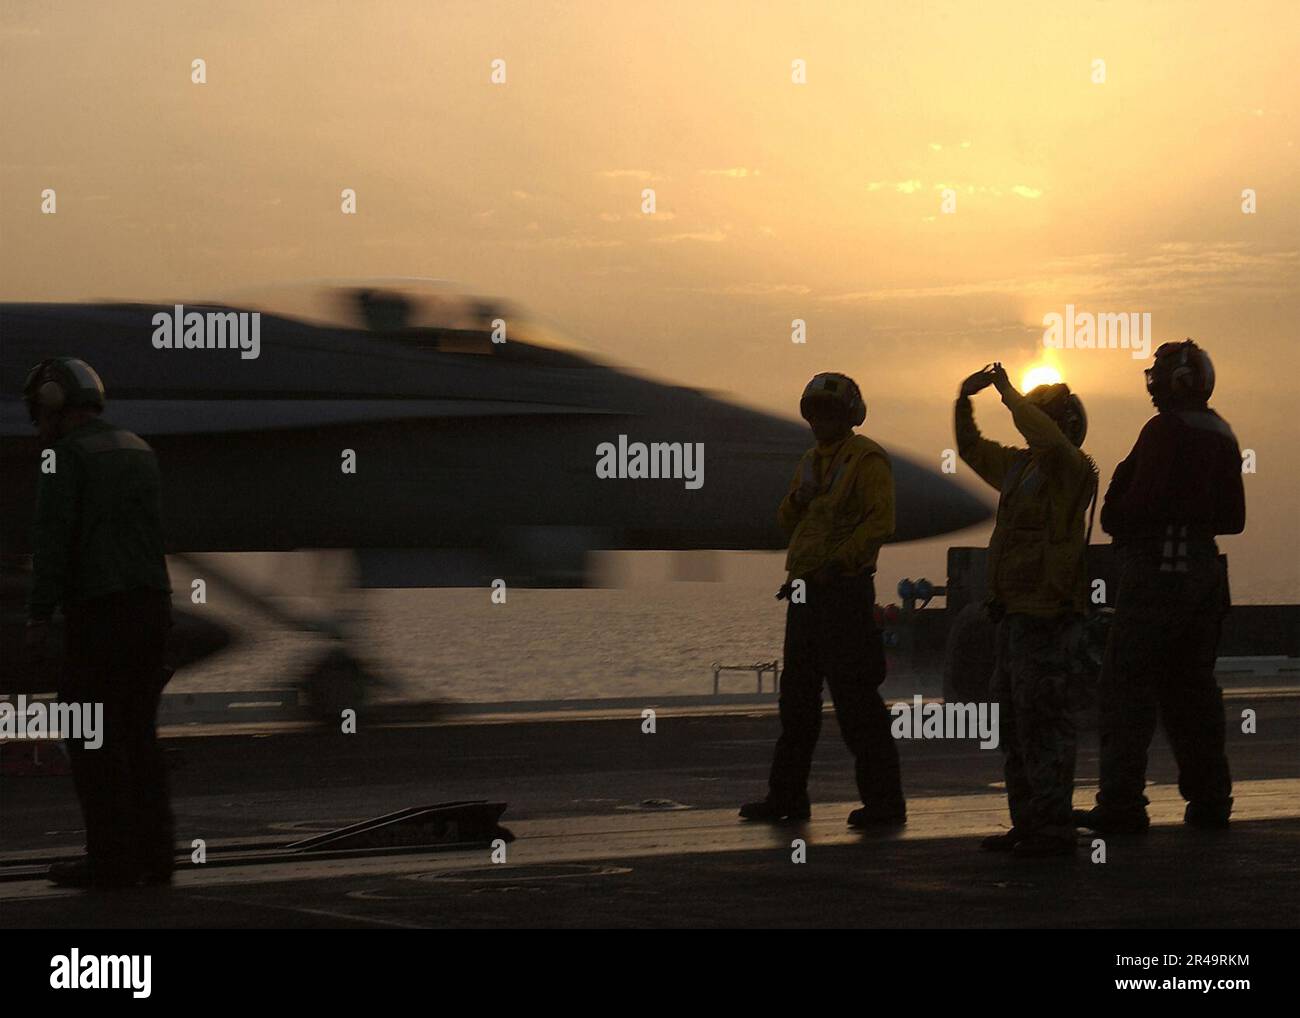 LES directeurs du pont DE L'US Navy Flight positionnent un avion sur l'un des quatre catapultes à vapeur à bord de l'USS George Washington (CVN 73) tandis qu'un F-A-18C Hornet se lance derrière eux Banque D'Images